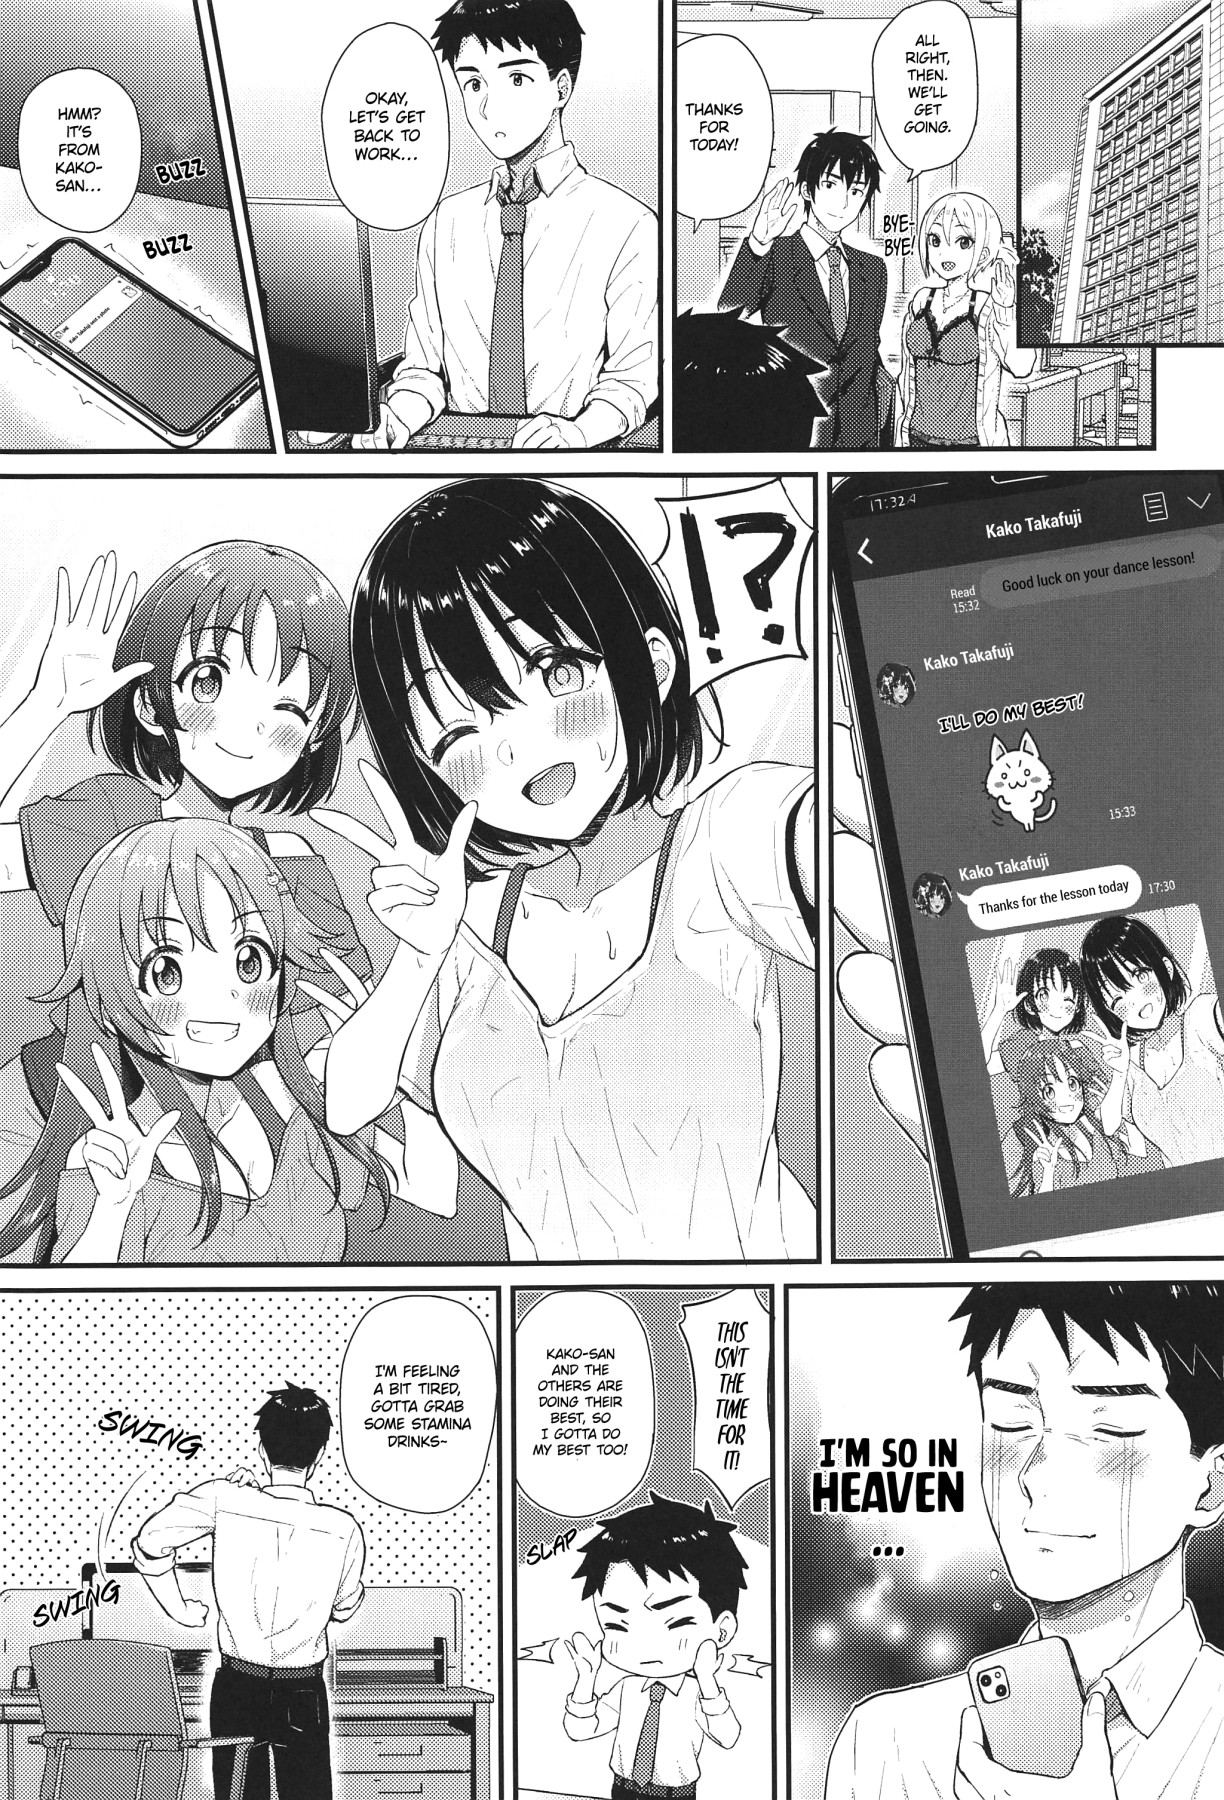 Hentai Manga Comic-Kako-san and Shota P-Read-2